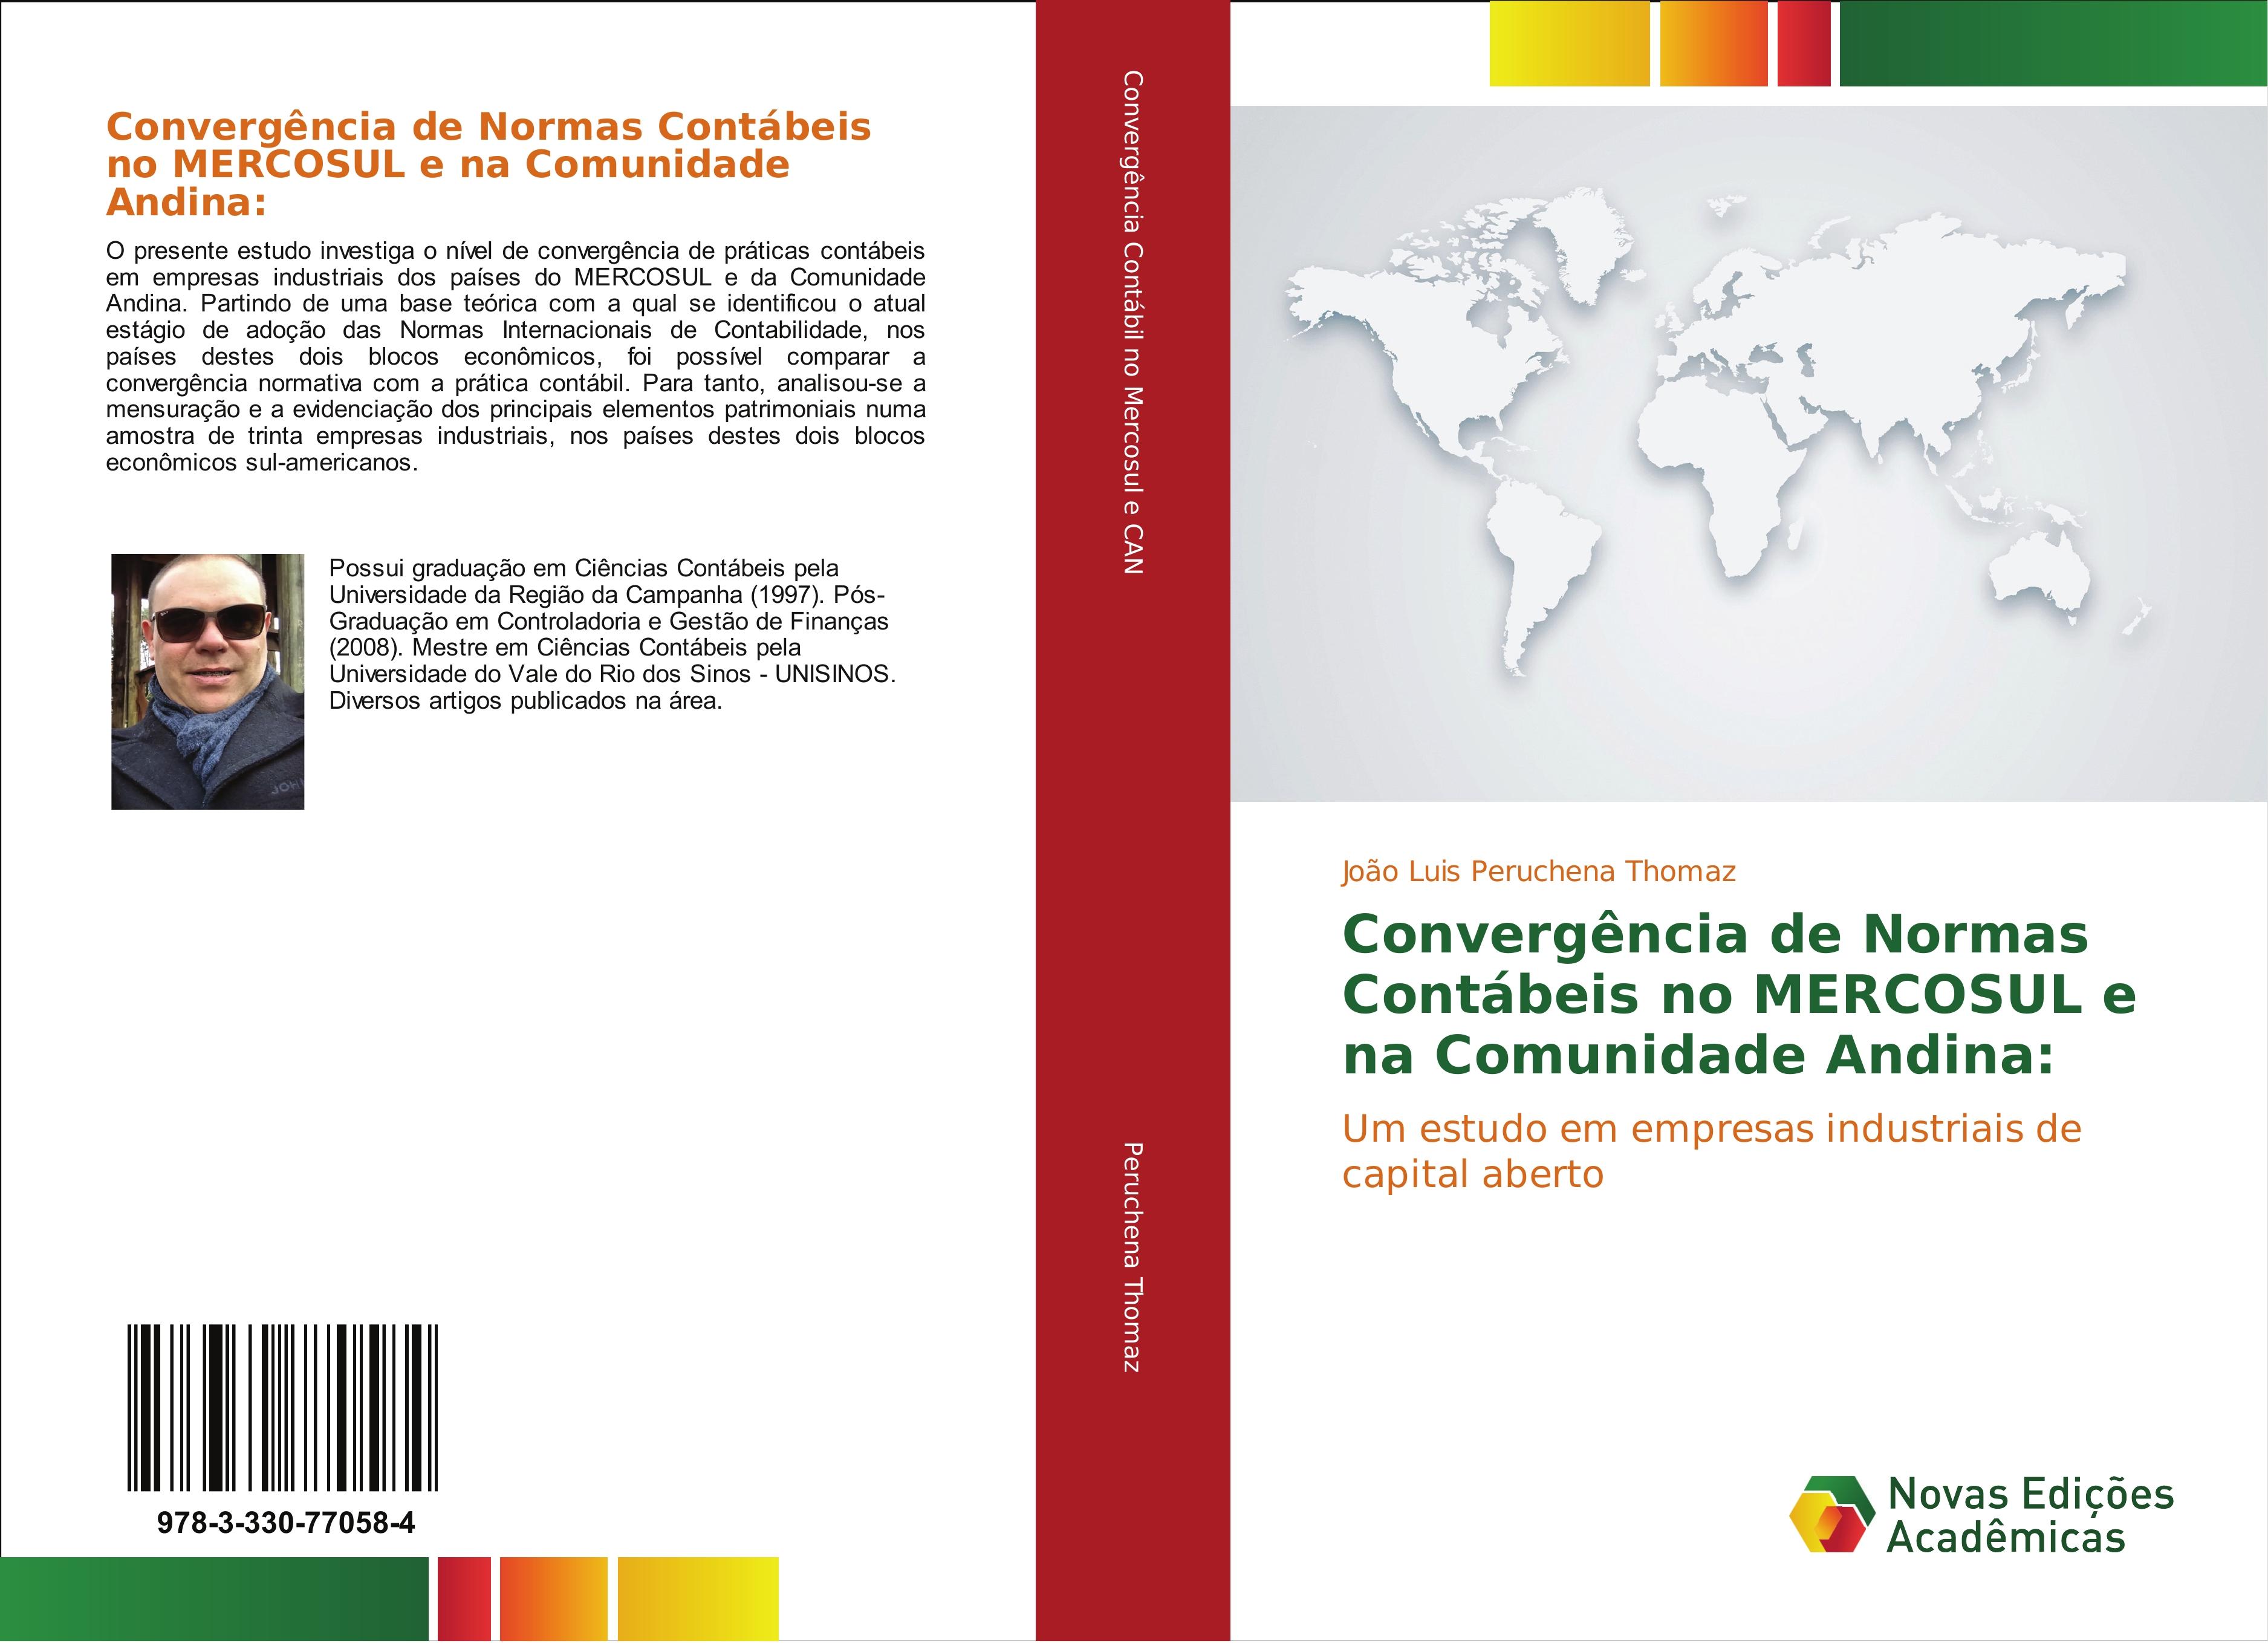 Convergência de Normas Contábeis no MERCOSUL e na Comunidade Andina - João Luis Peruchena Thomaz